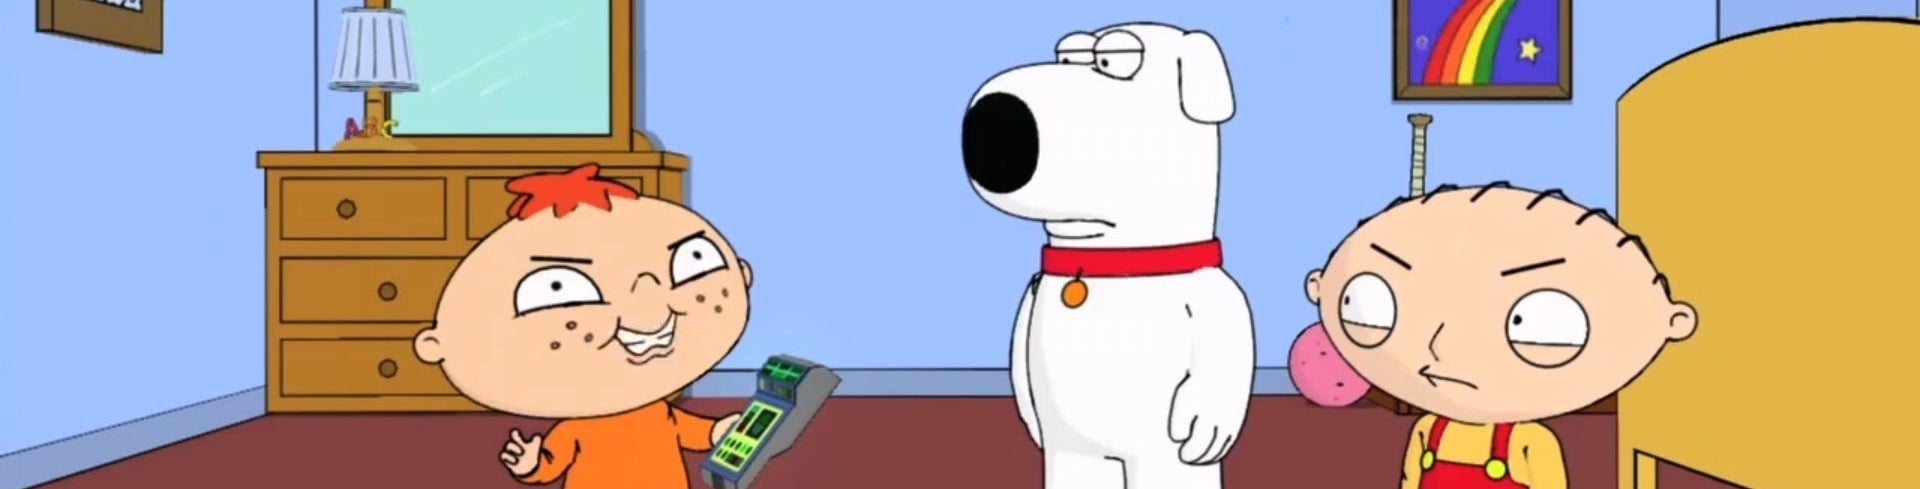 Imagen para Análisis de Family Guy:  Back to the Multiverse